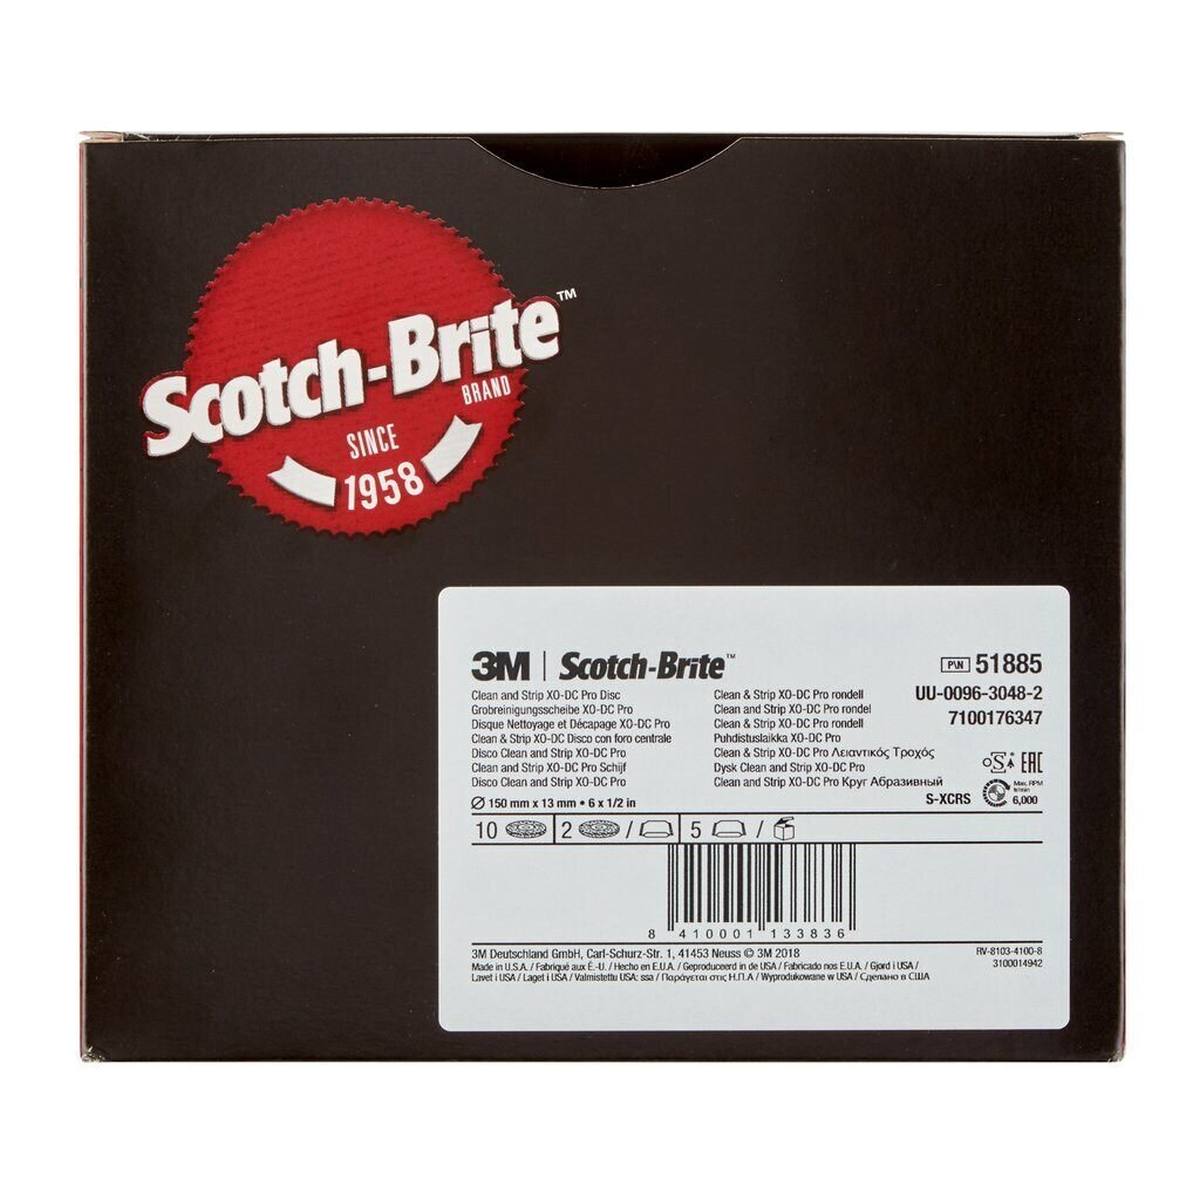 3M Scotch-Brite disco per pulizia grossolana XT-DC Pro, 150 mm x 13 mm, S, extra grossolano